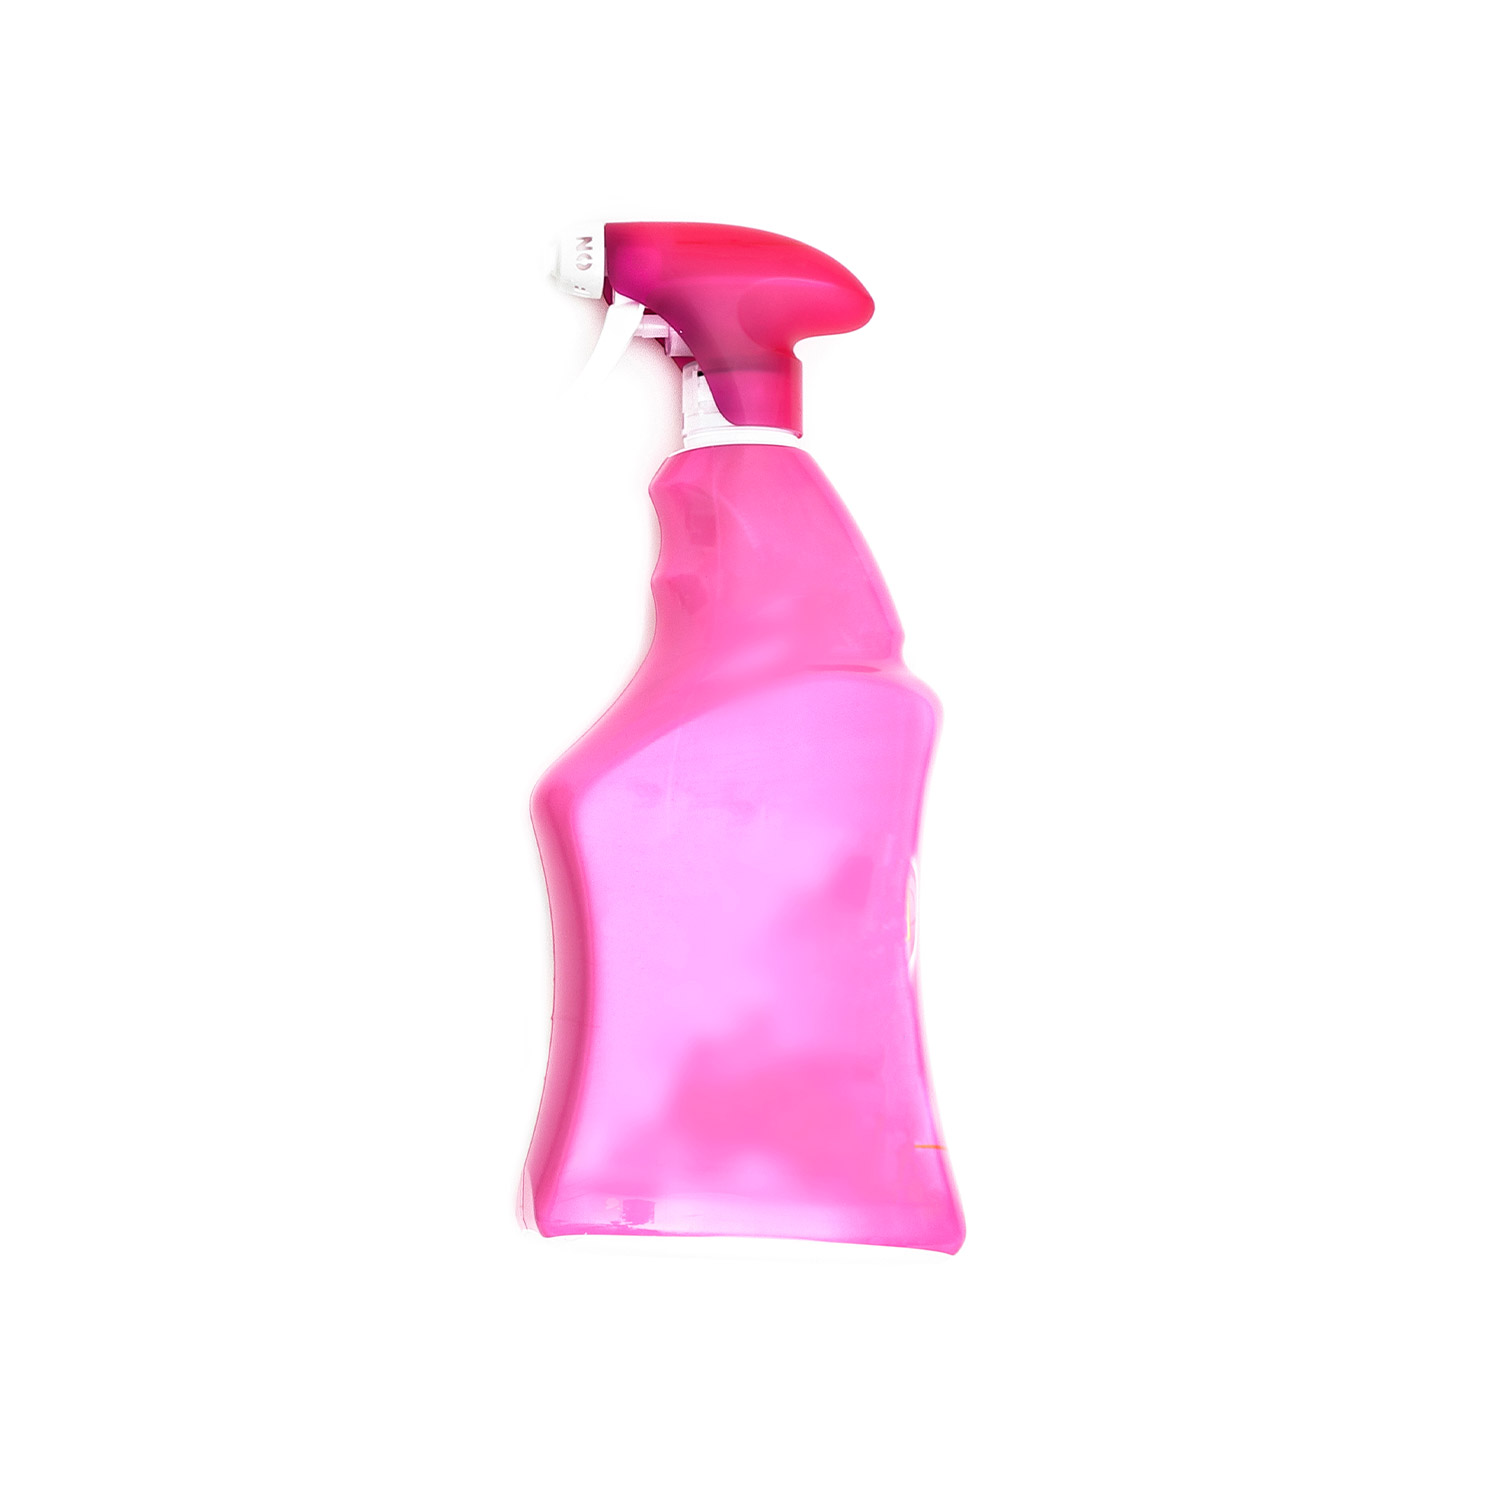 En sprayflaska med stor rosa etikett